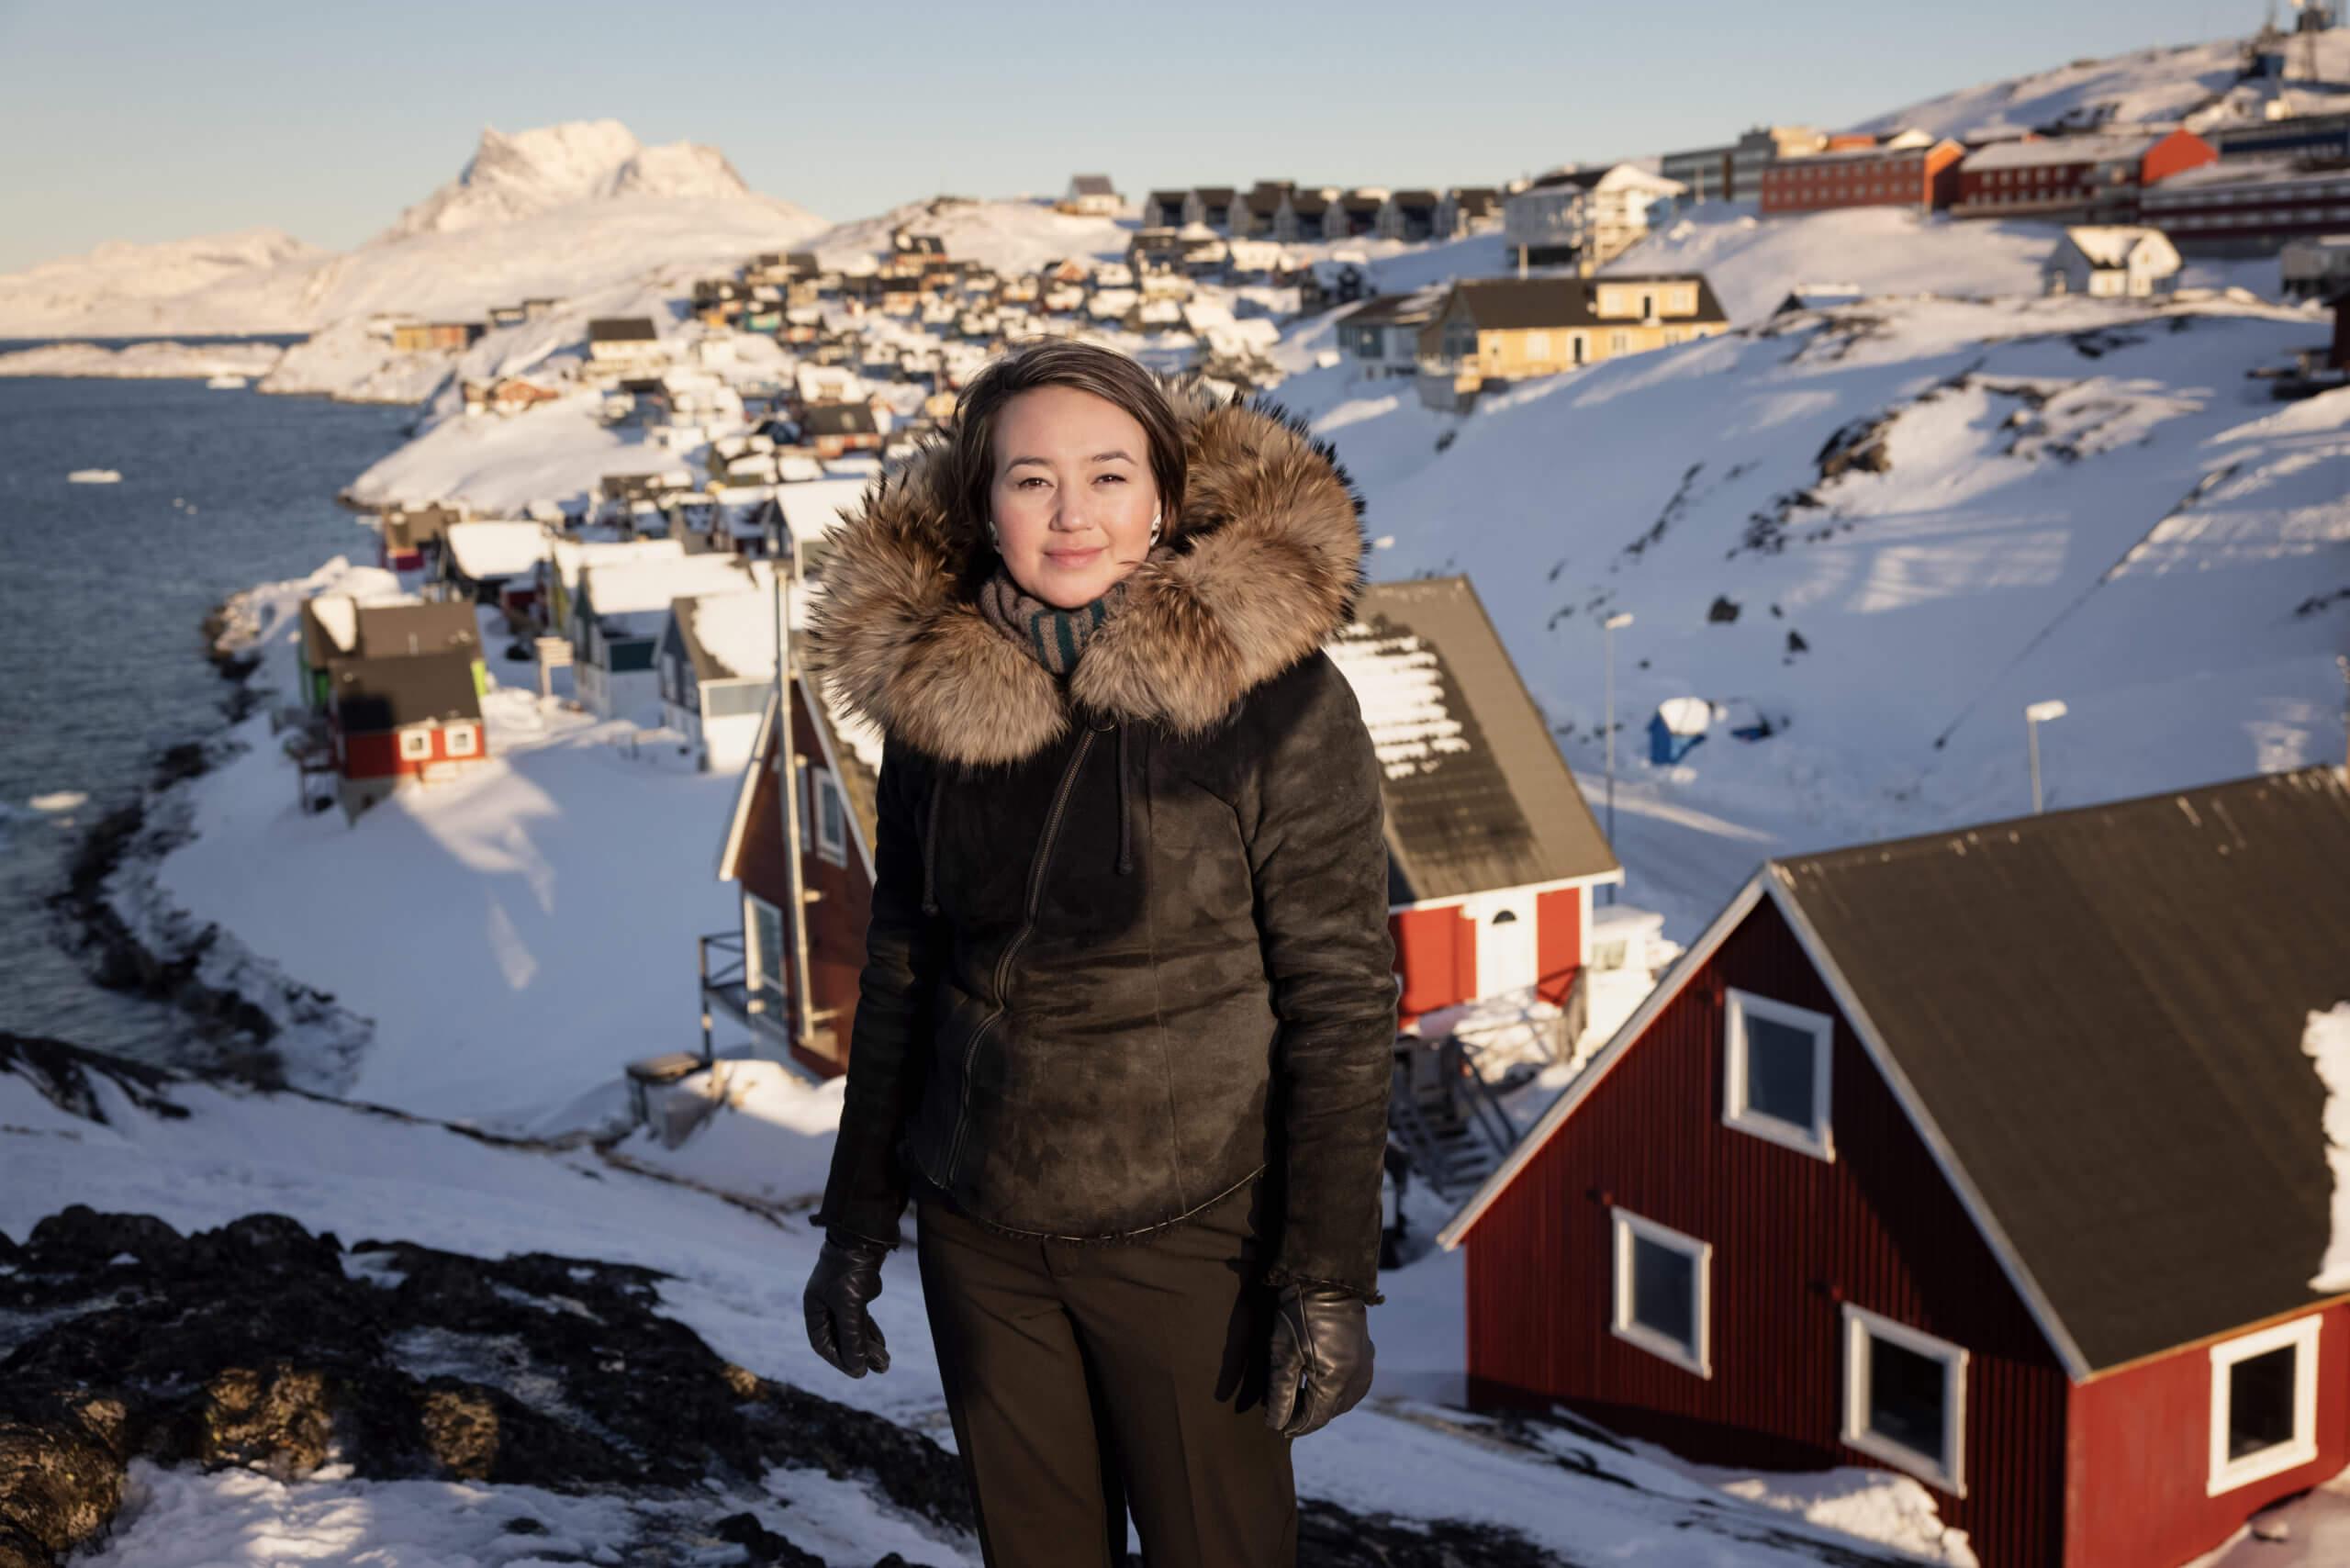 Kommunalvalget i Grønland byder på boligkriser, en radioaktiv mine og en mulig kommunalreform. I hovedstadskommunen skal borgmester Charlotte Ludvigsen (IA) dyste mod en folkekær musiker og en minister om posten.